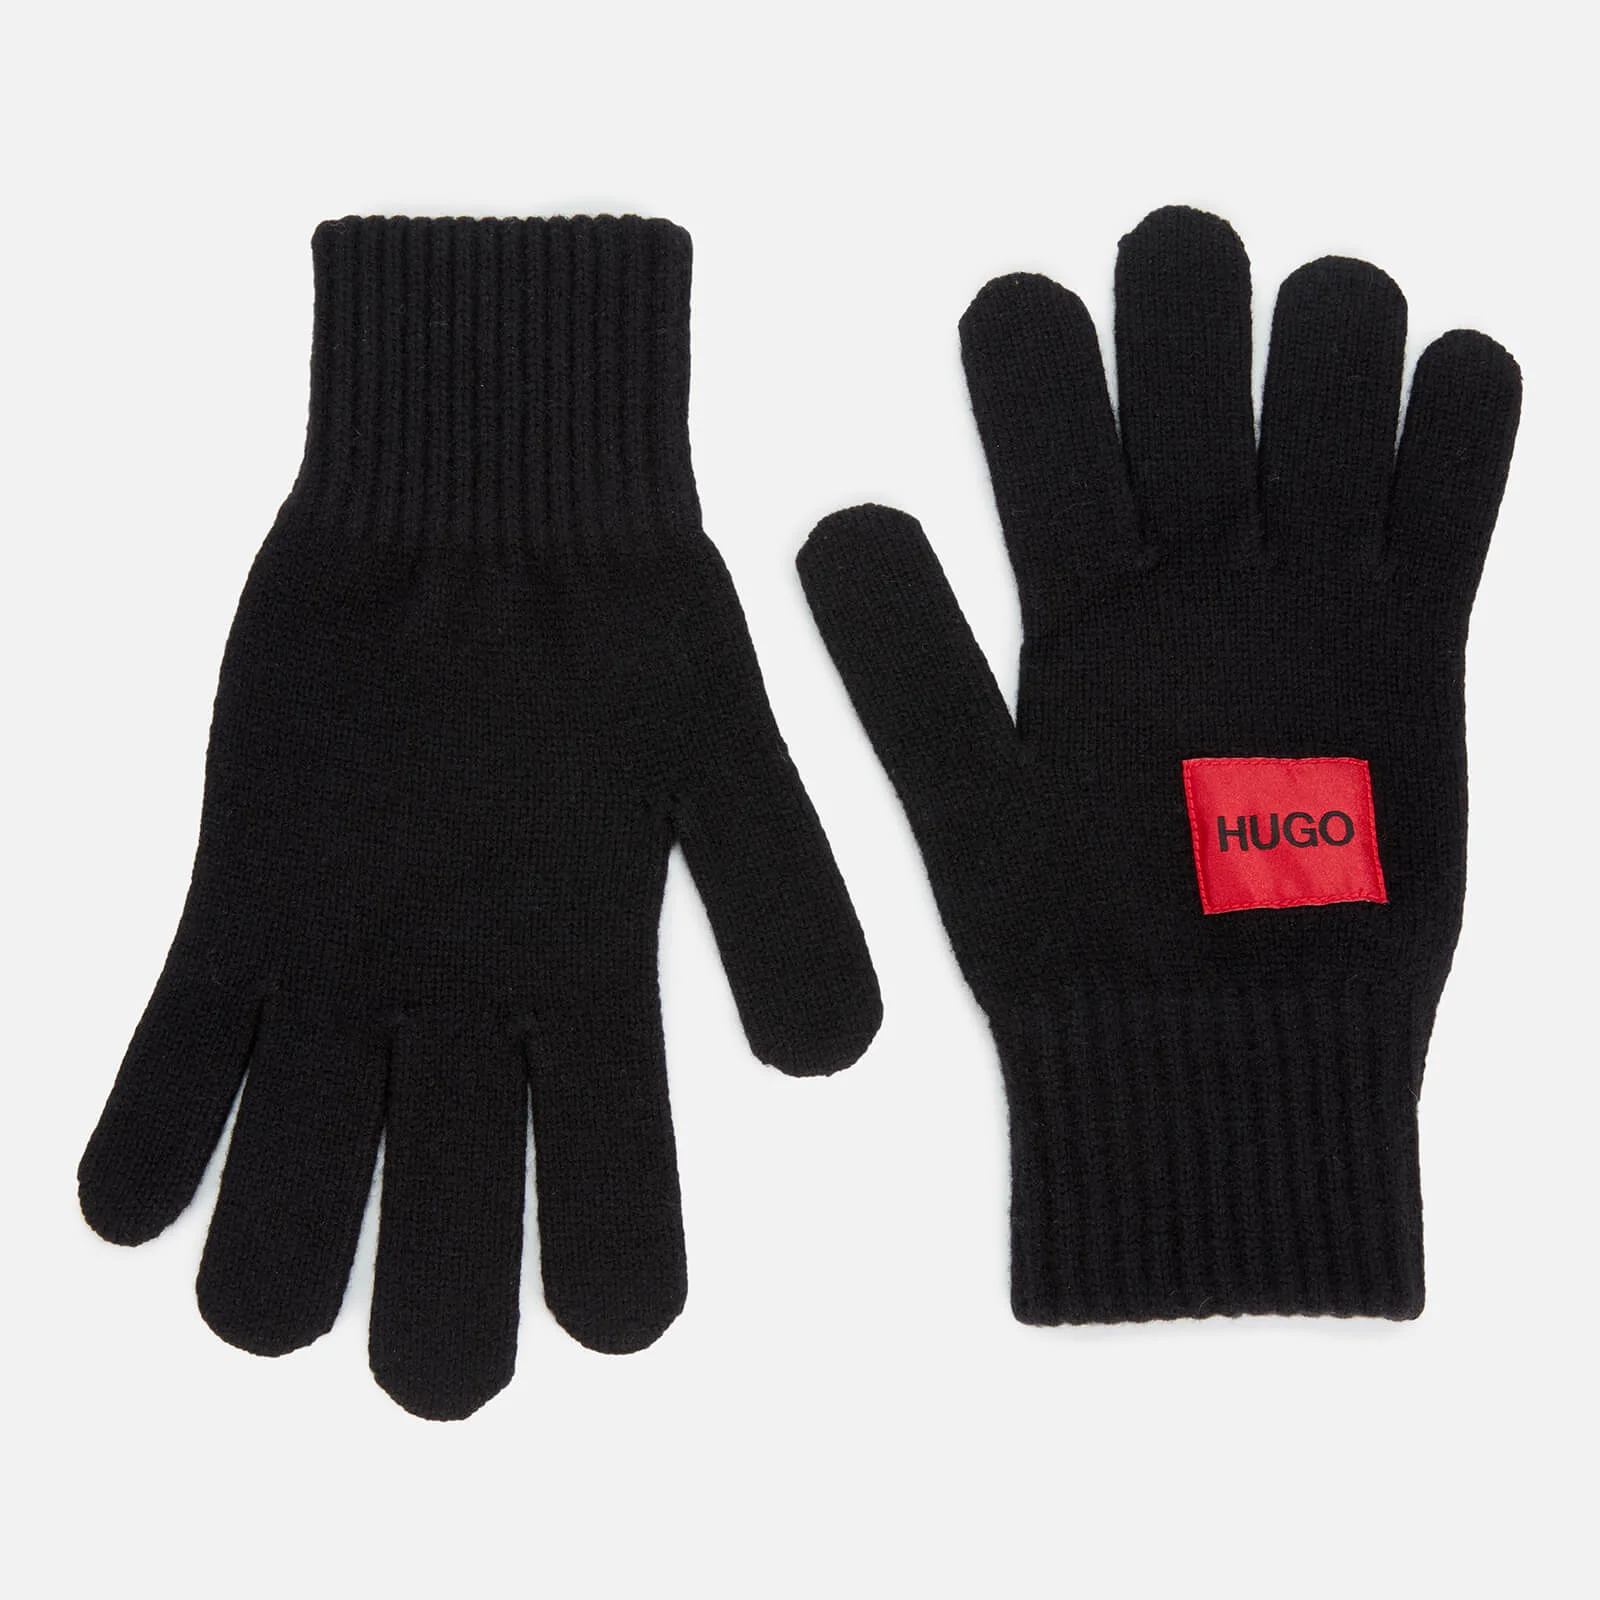 HUGO Men's Waff Gloves - Black Image 1